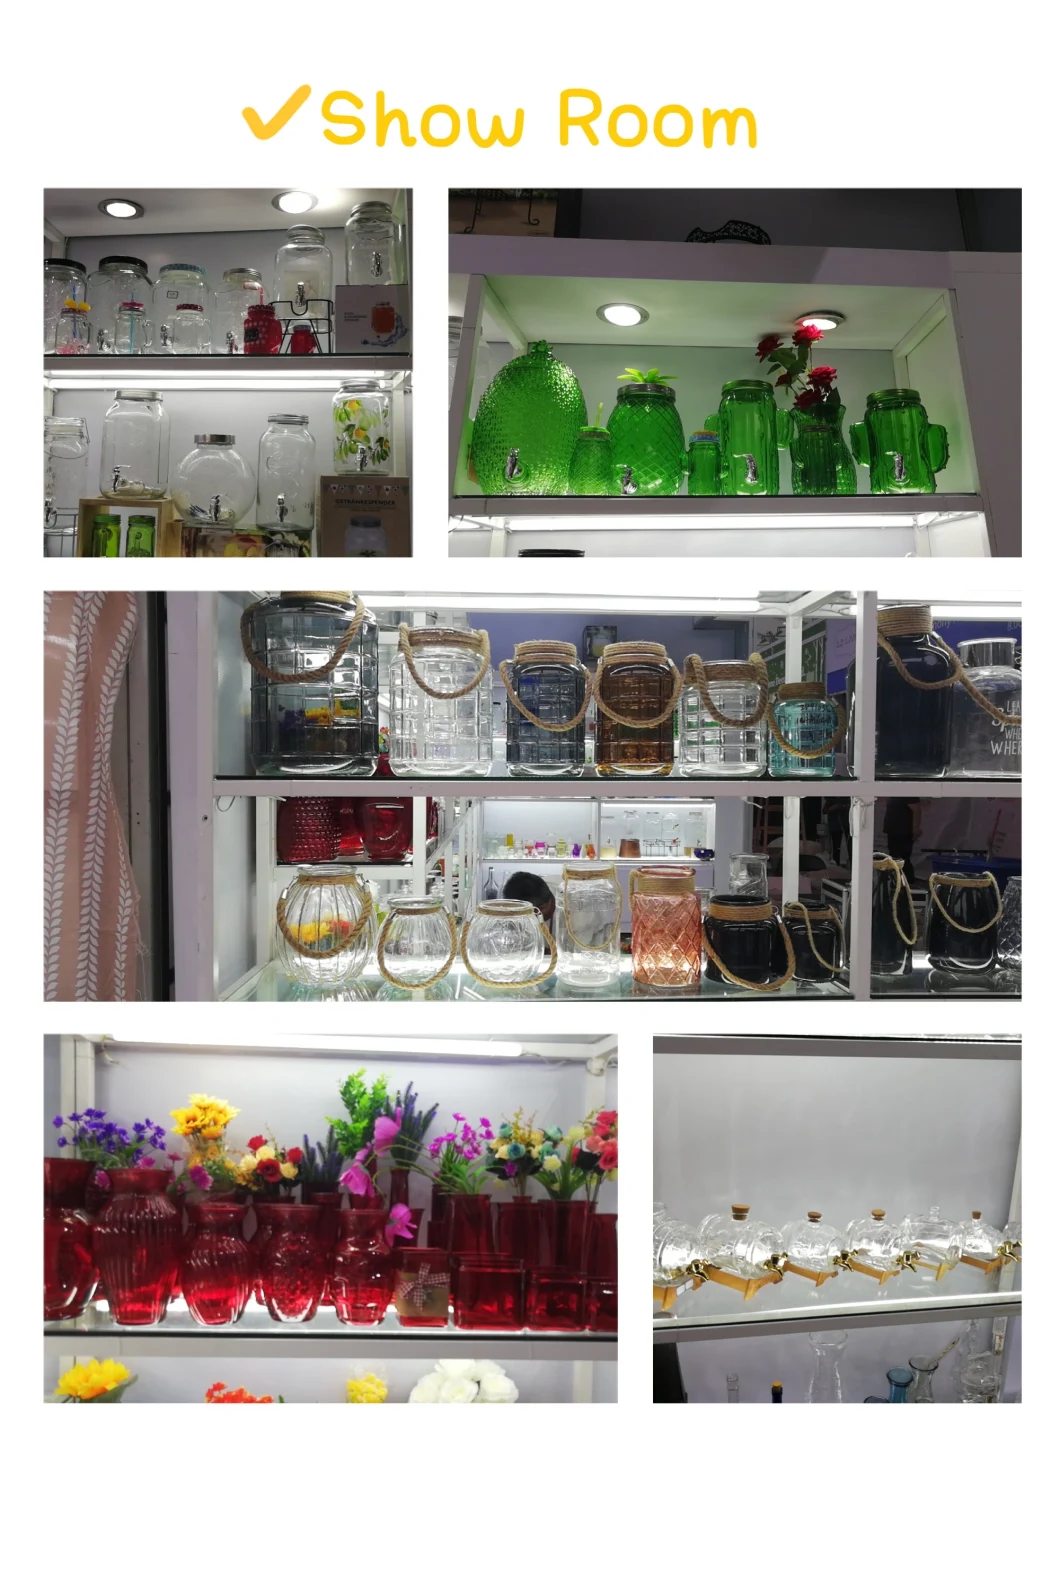 Round Glass Preserve Food Storage Jar with Glass Lid